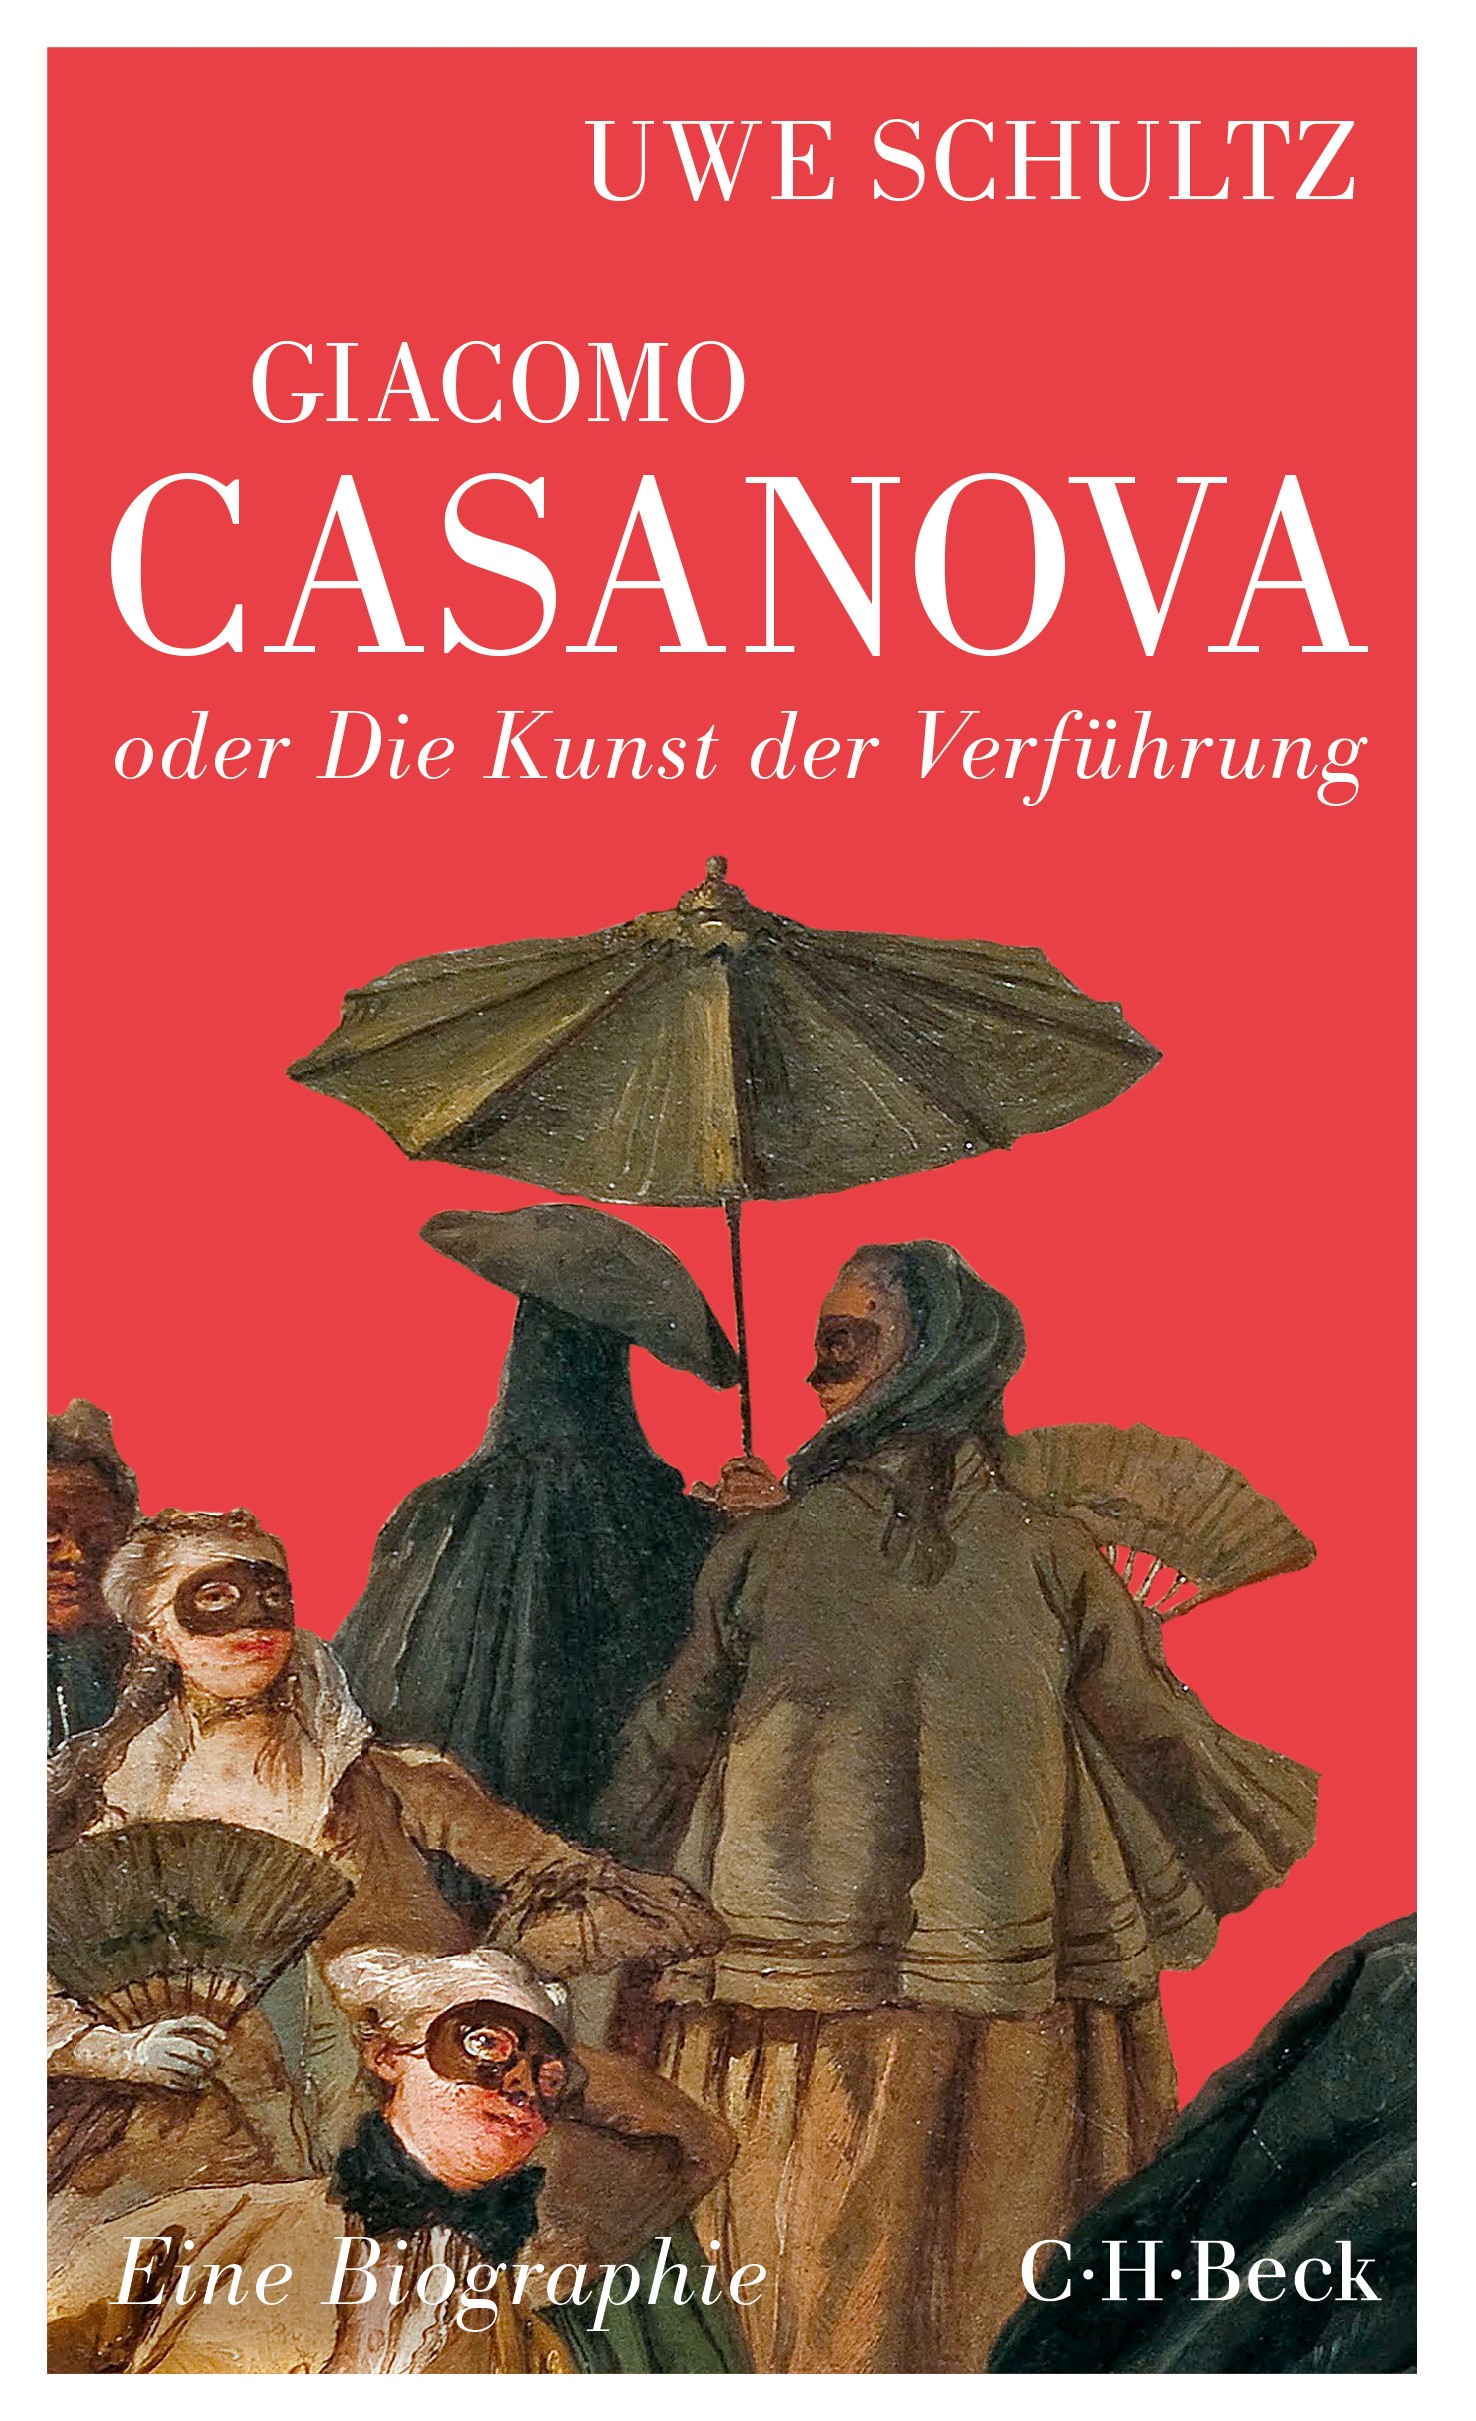 Cover: Schultz, Uwe, Giacomo Casanova oder Die Kunst der Verführung